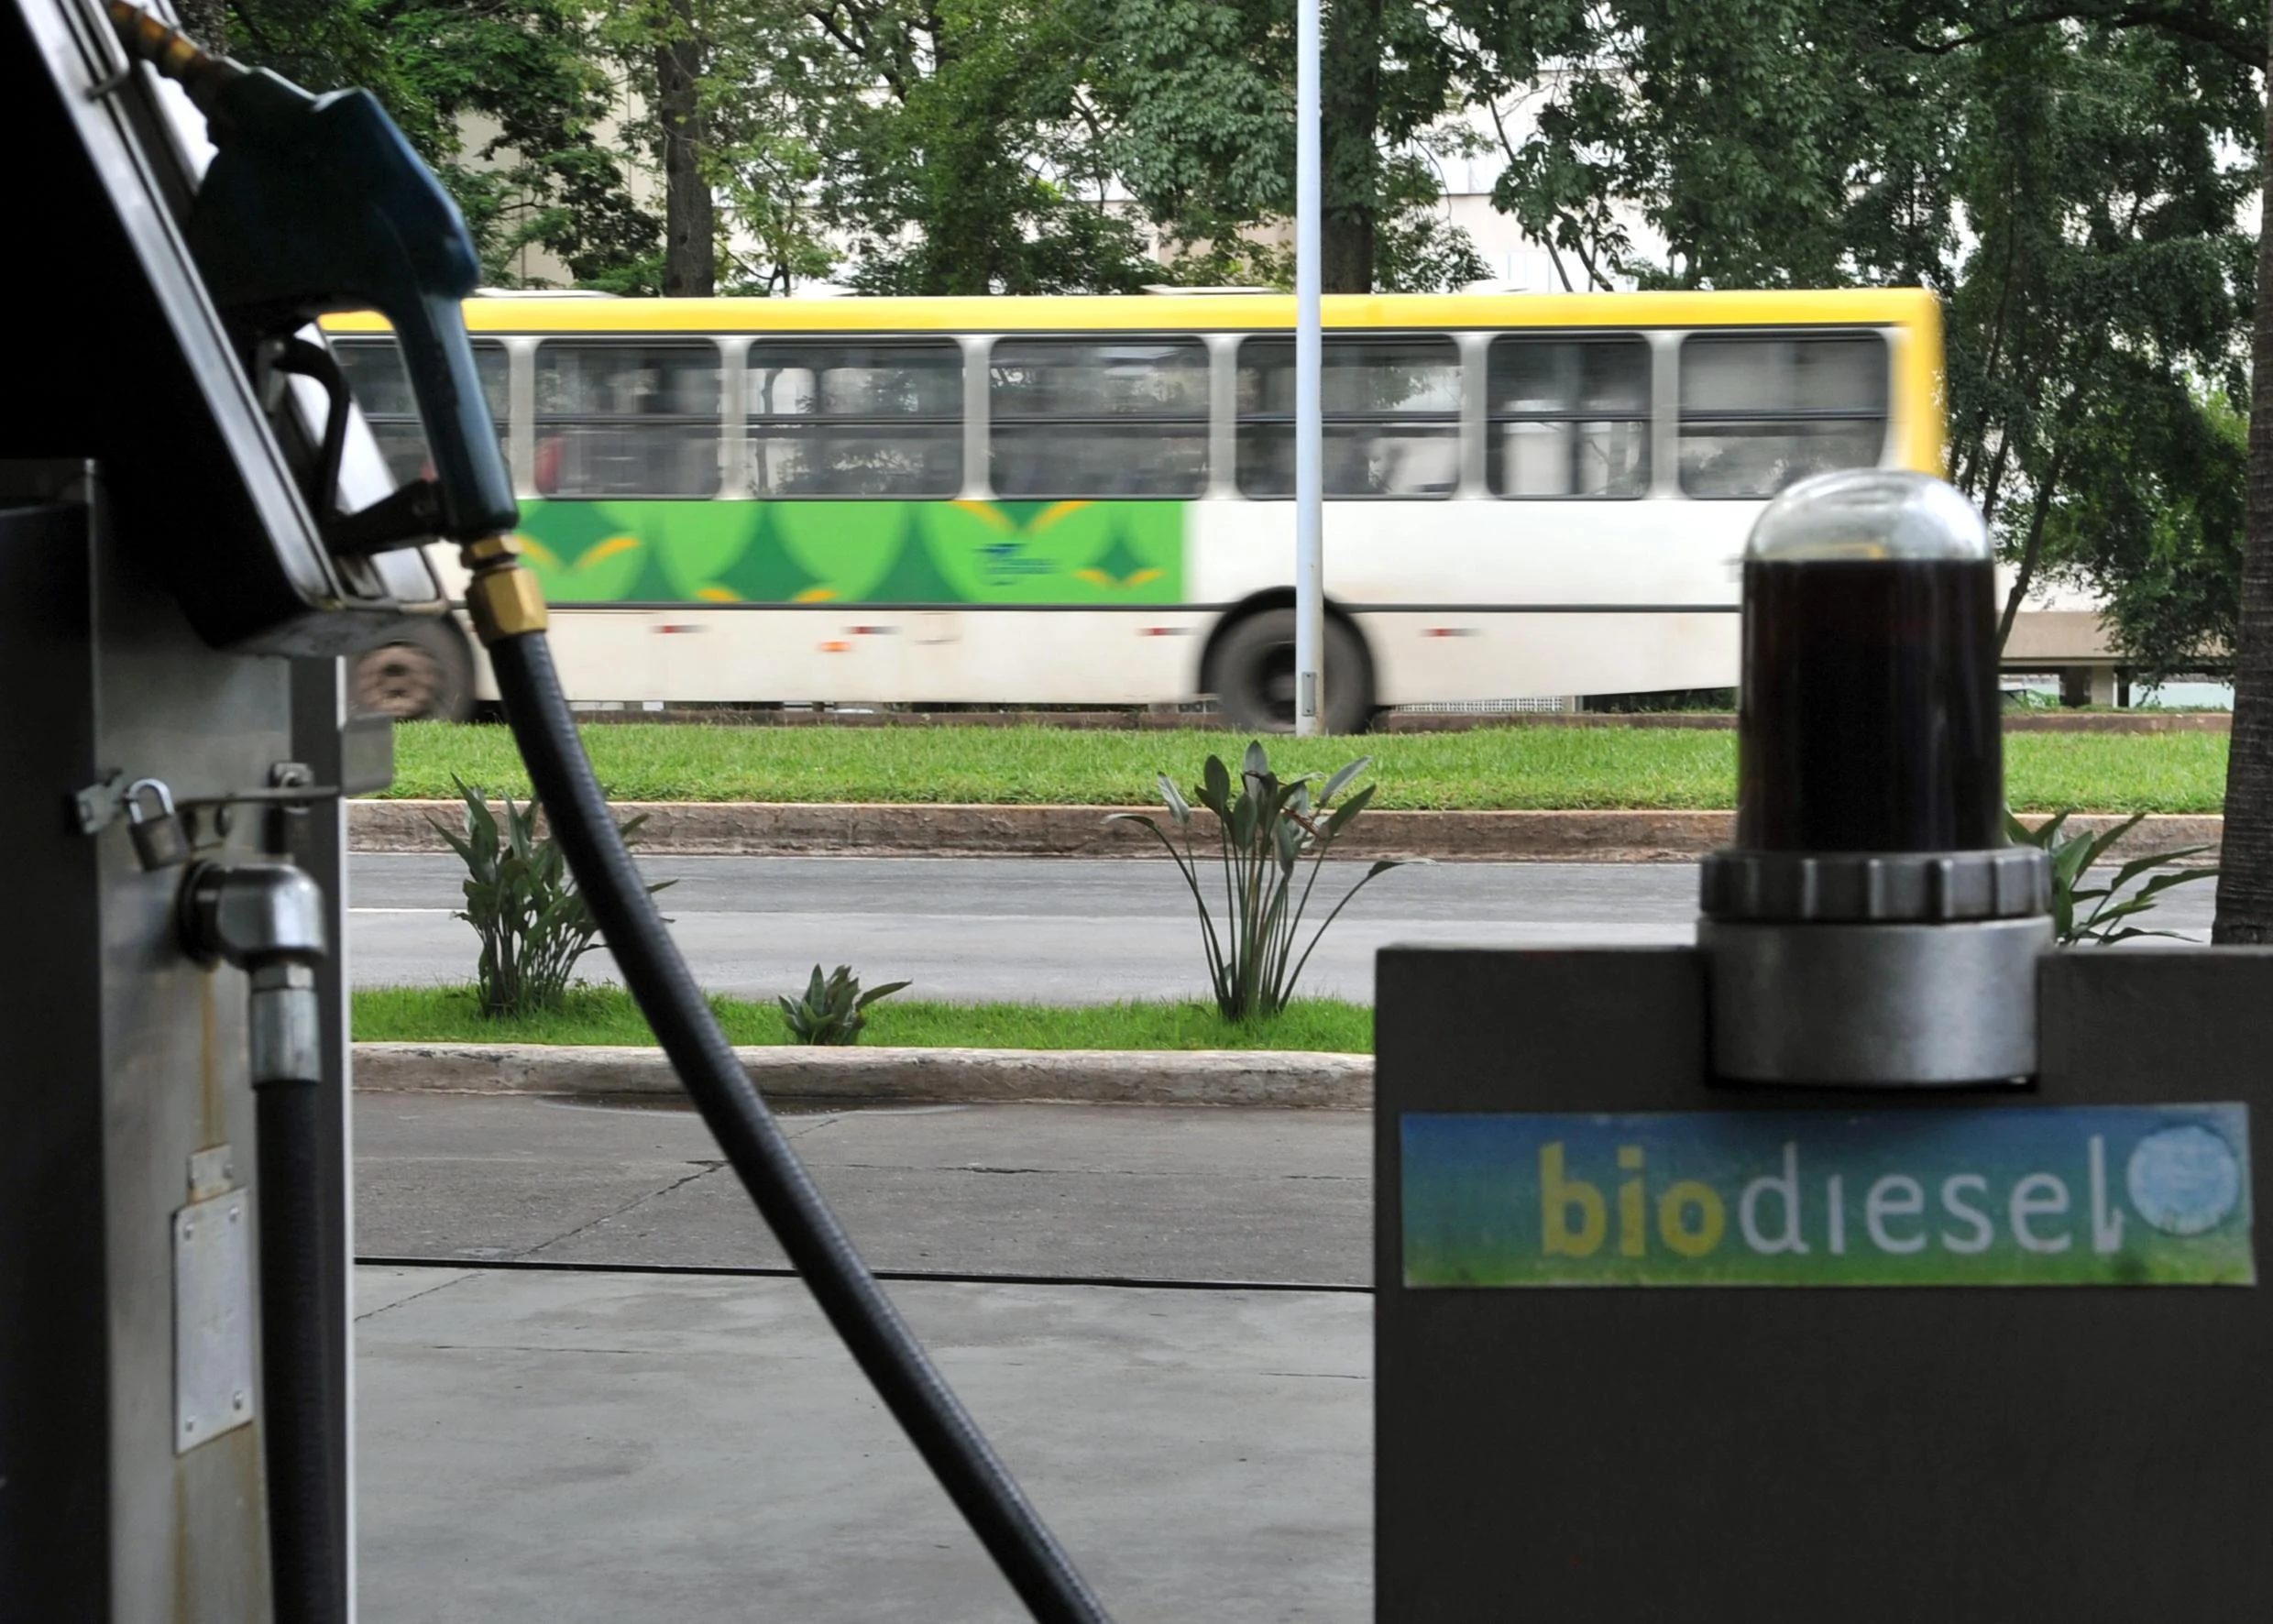 Indústria recorre à ANP para adiar importação de biodiesel. Na imagem: Bomba em posto com abastecimento de biodiesel; e ao fundo ônibus urbano passando (Foto: Agência Brasil)